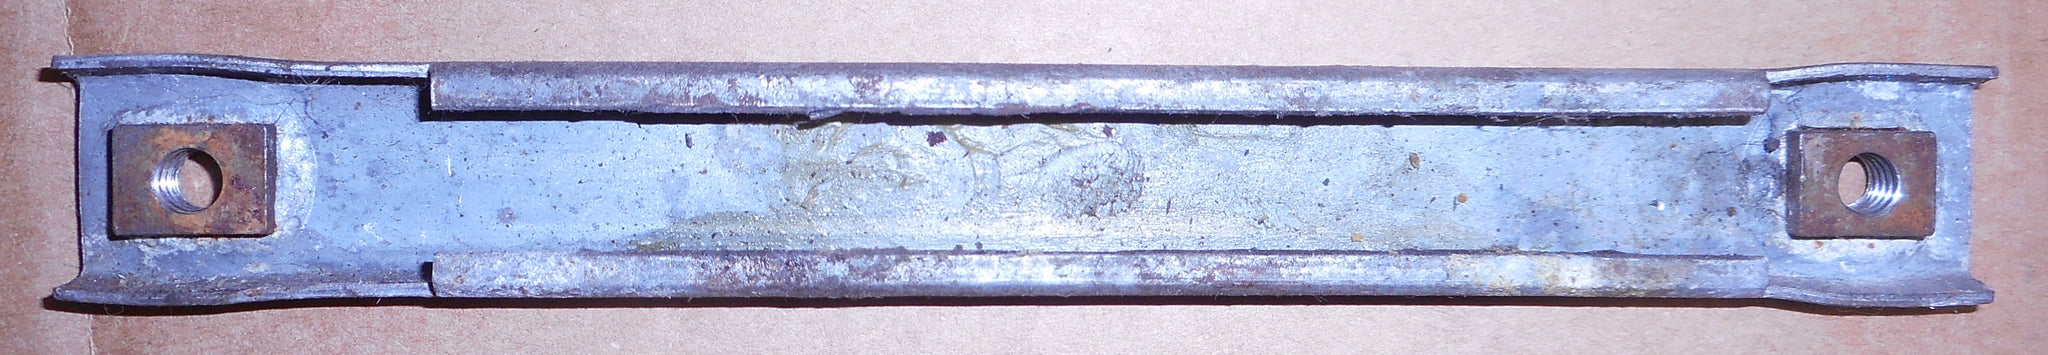 DOOR REGULATOR TRACK ,INNER, EACH, USED, 78-88 G-BODY